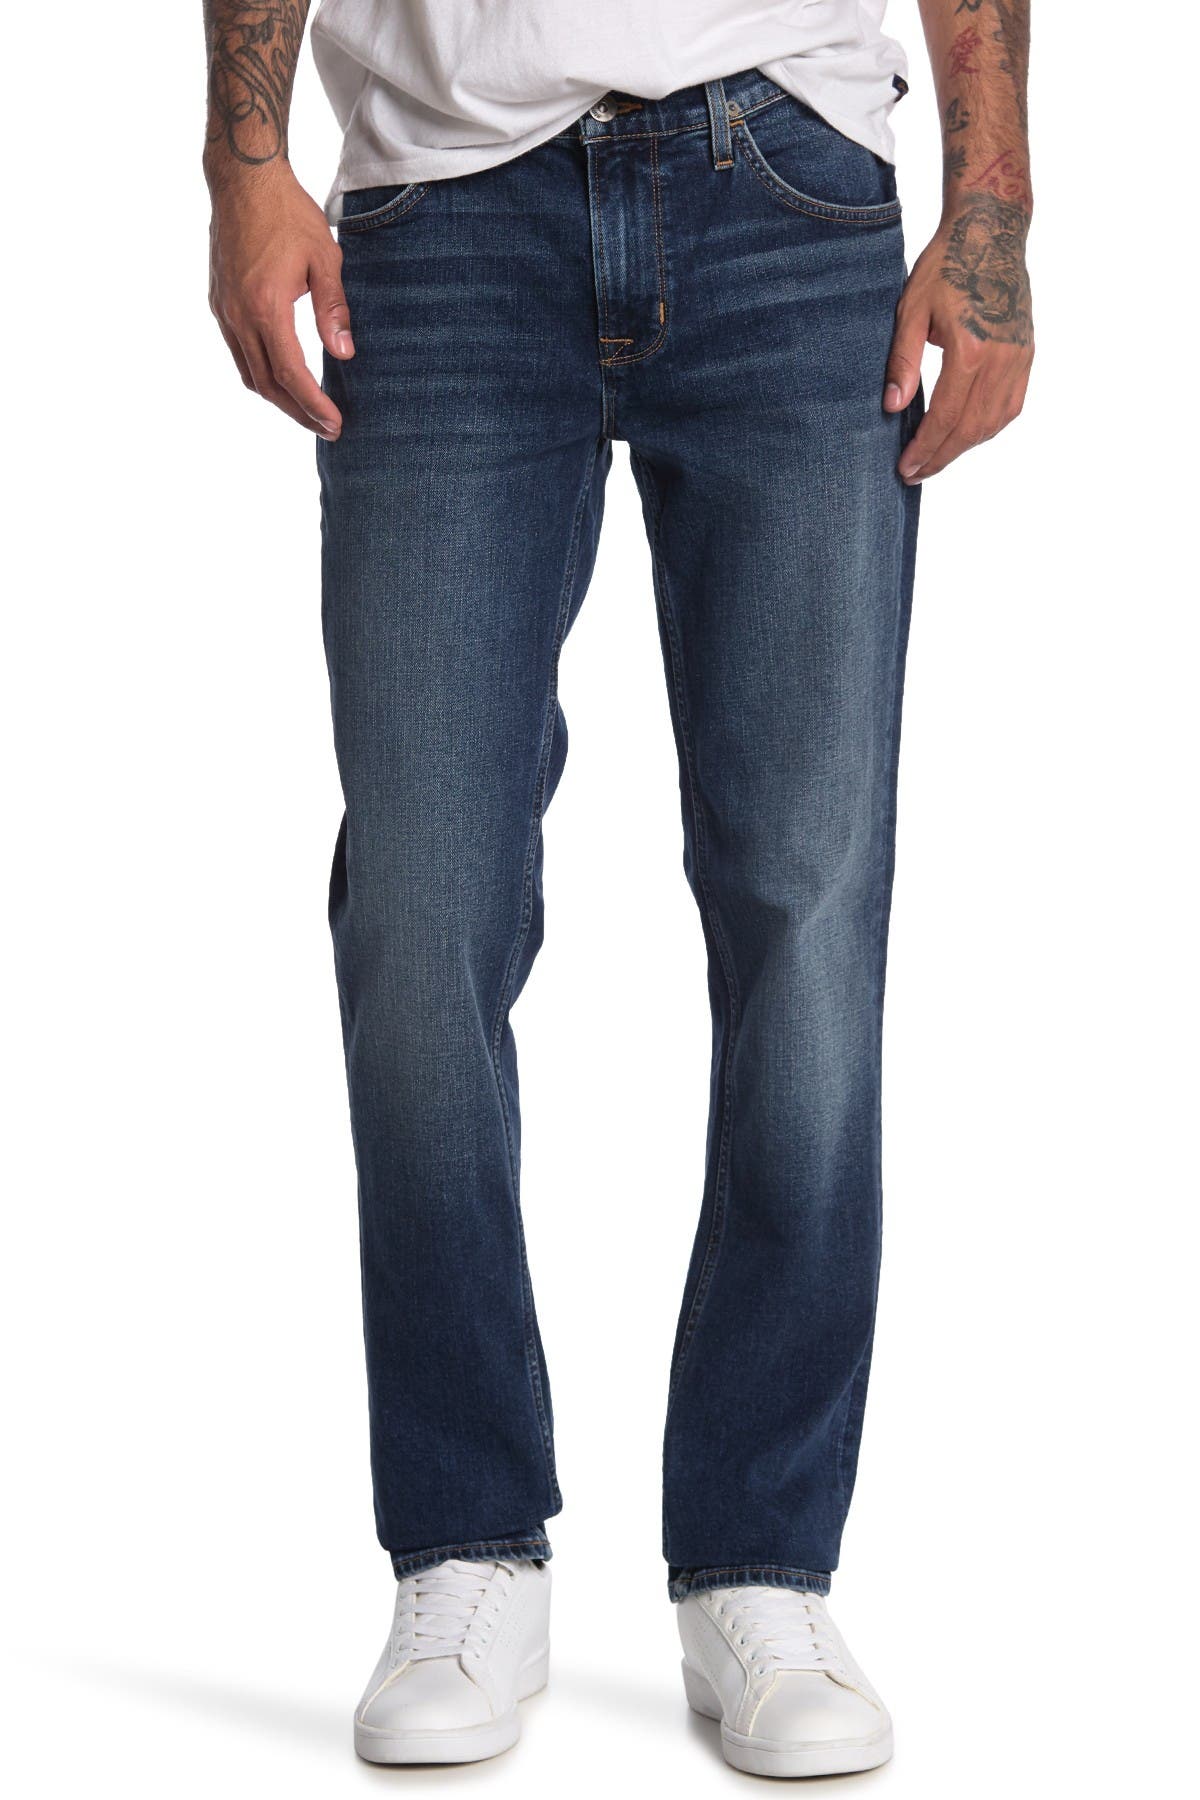 hudson jeans men's sale